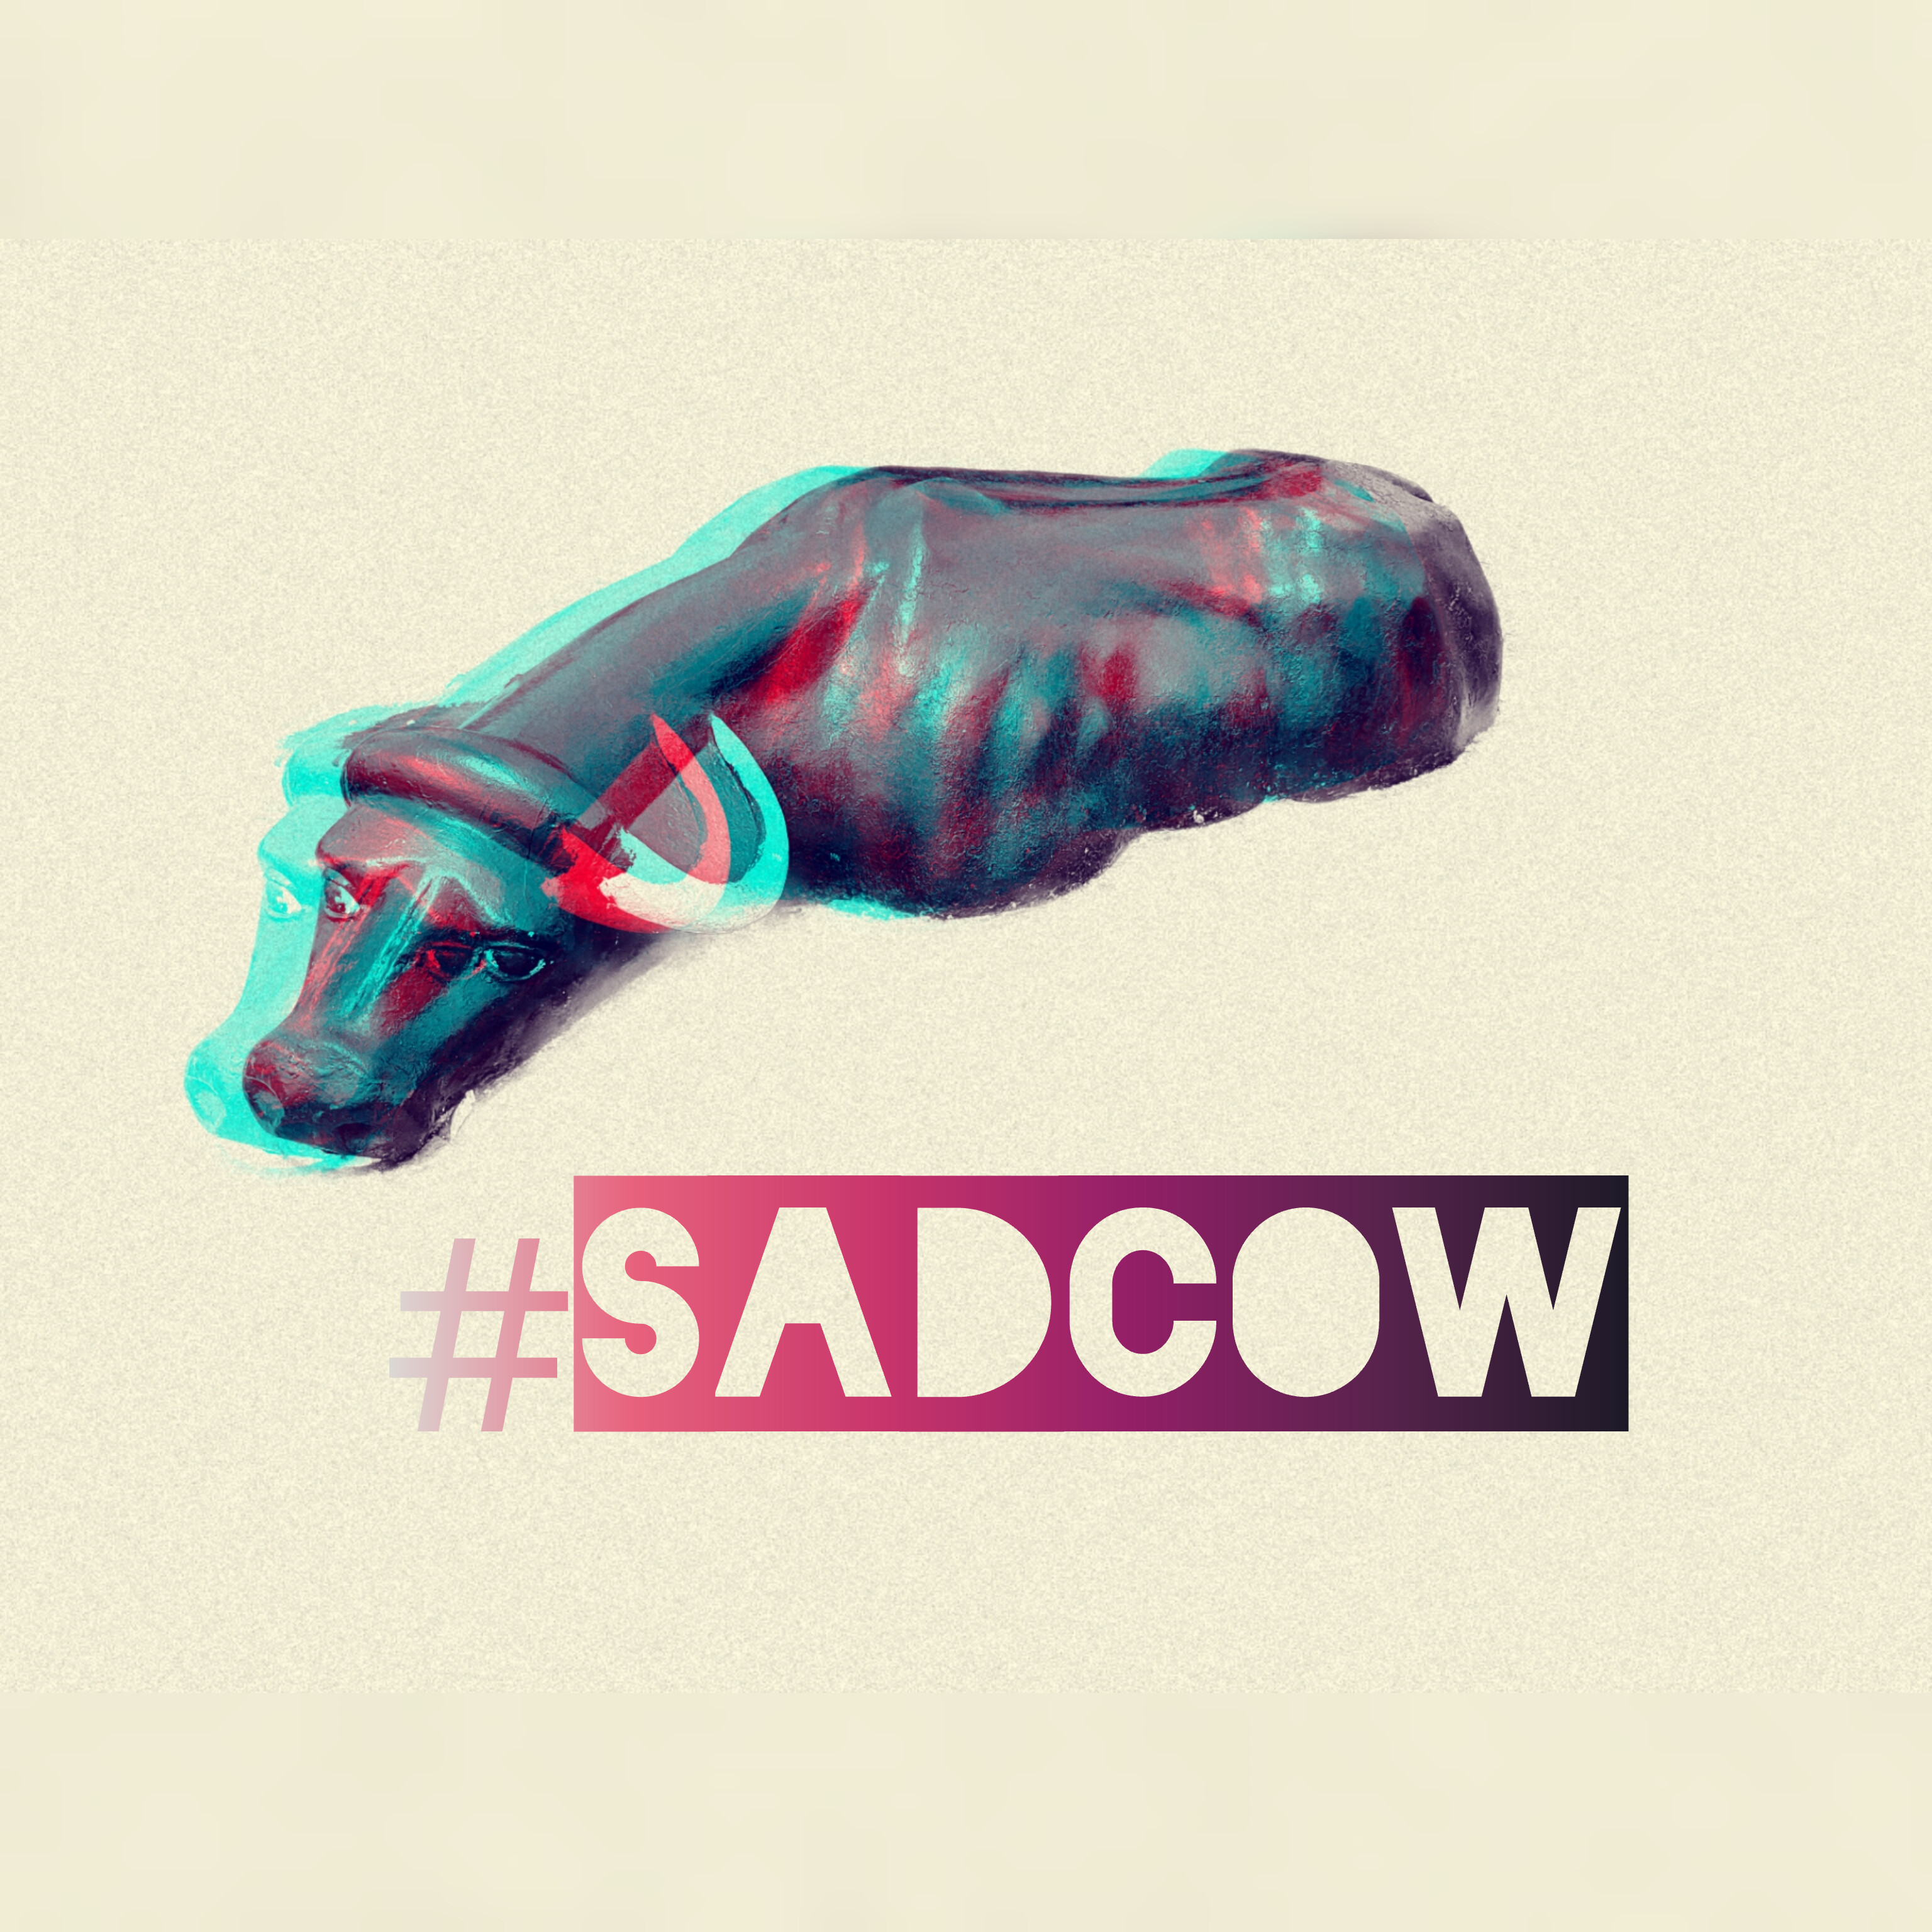 sad cow